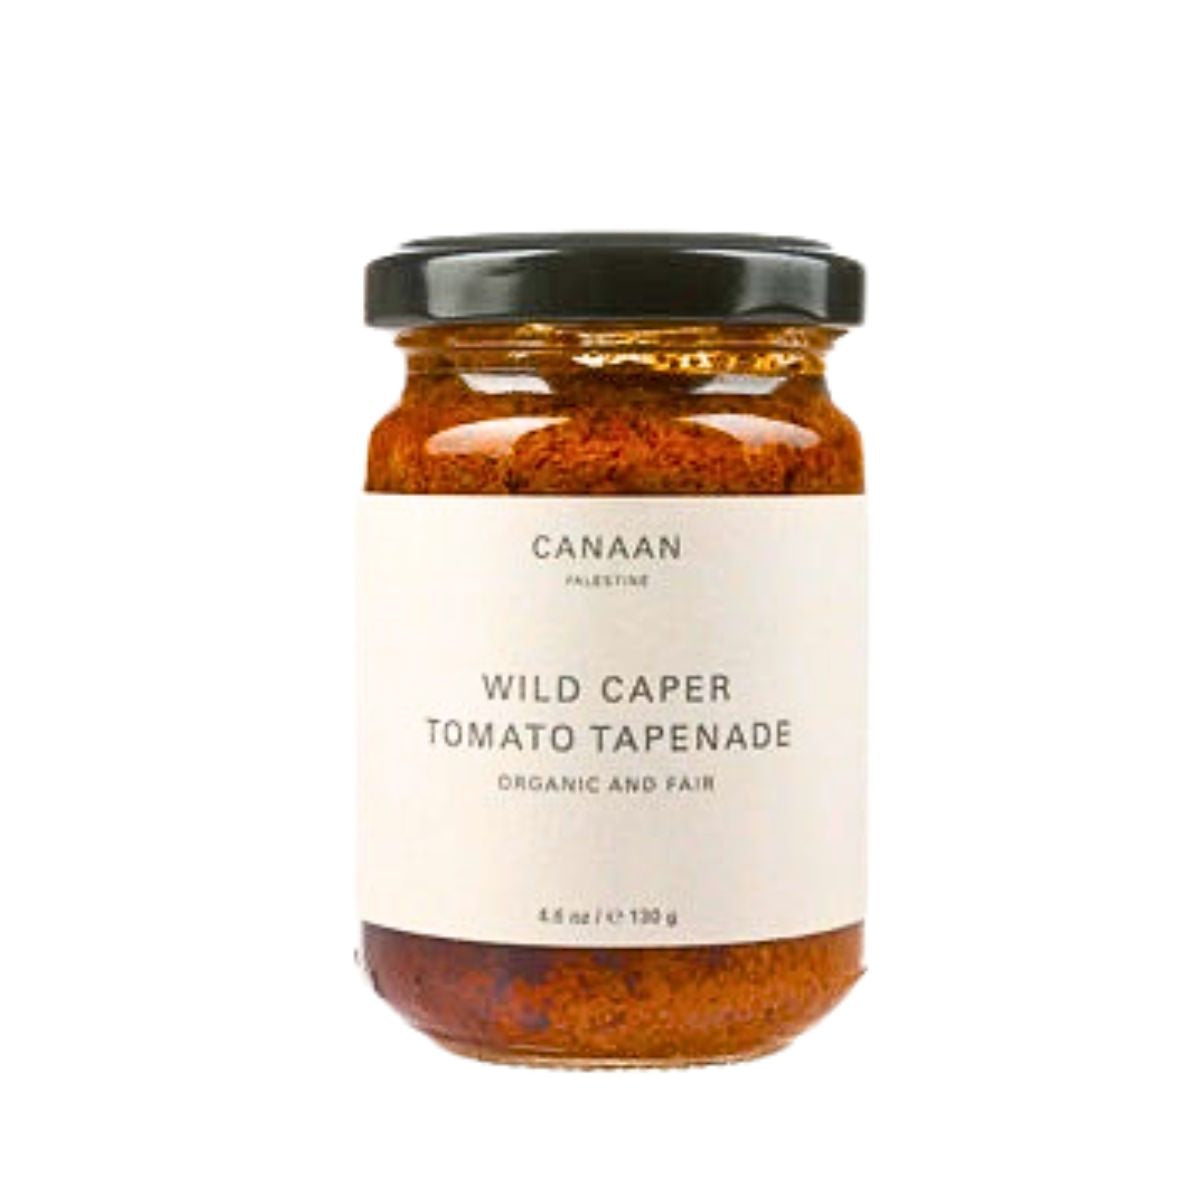 Wild Caper Tomato Tapenade